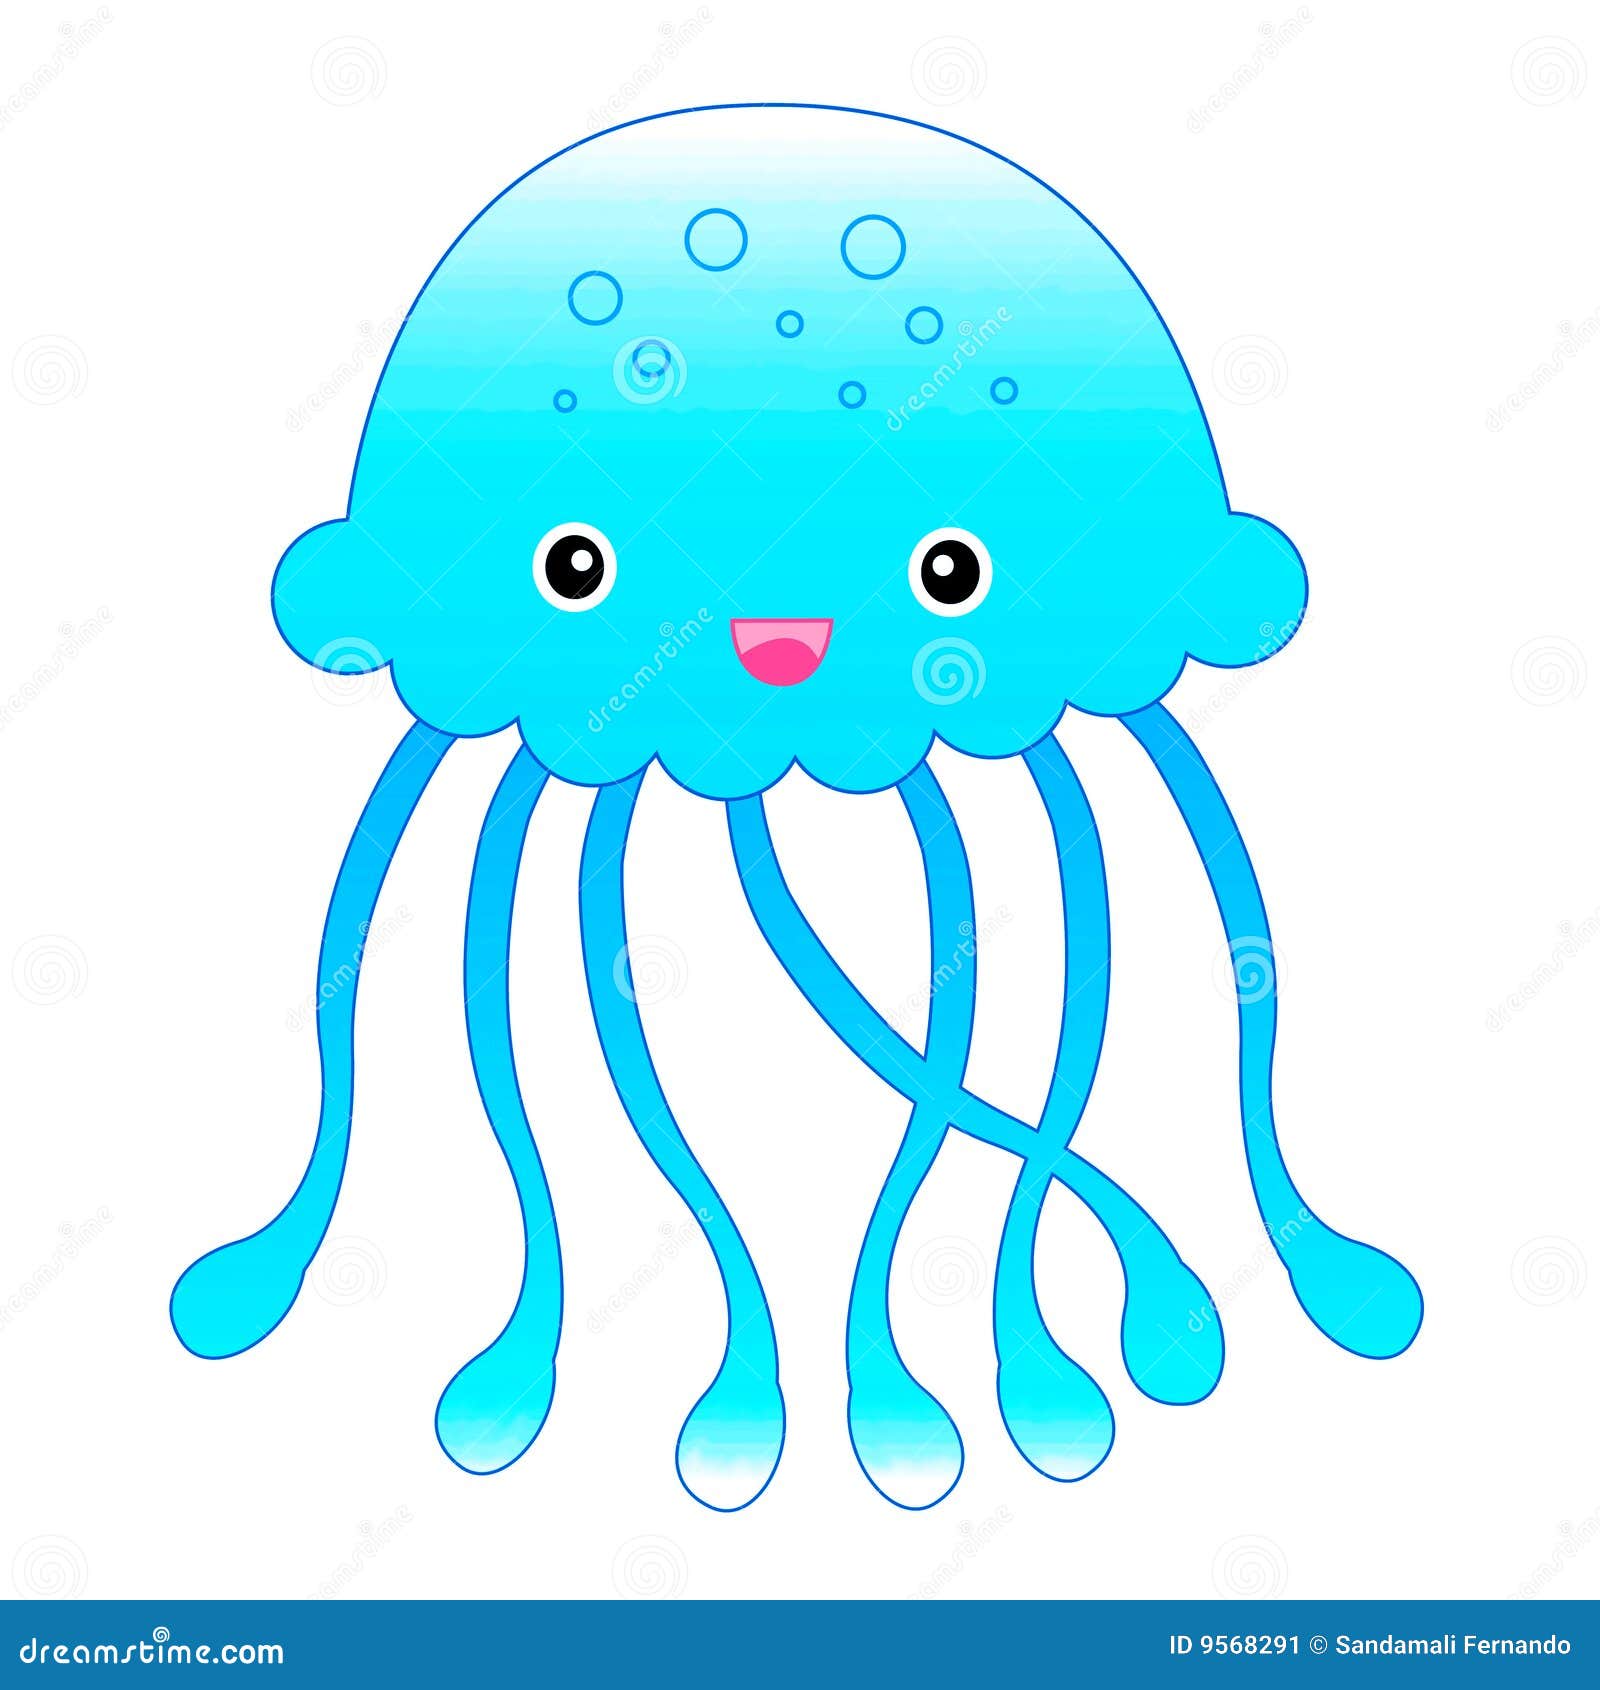 jellyfish clipart - photo #23